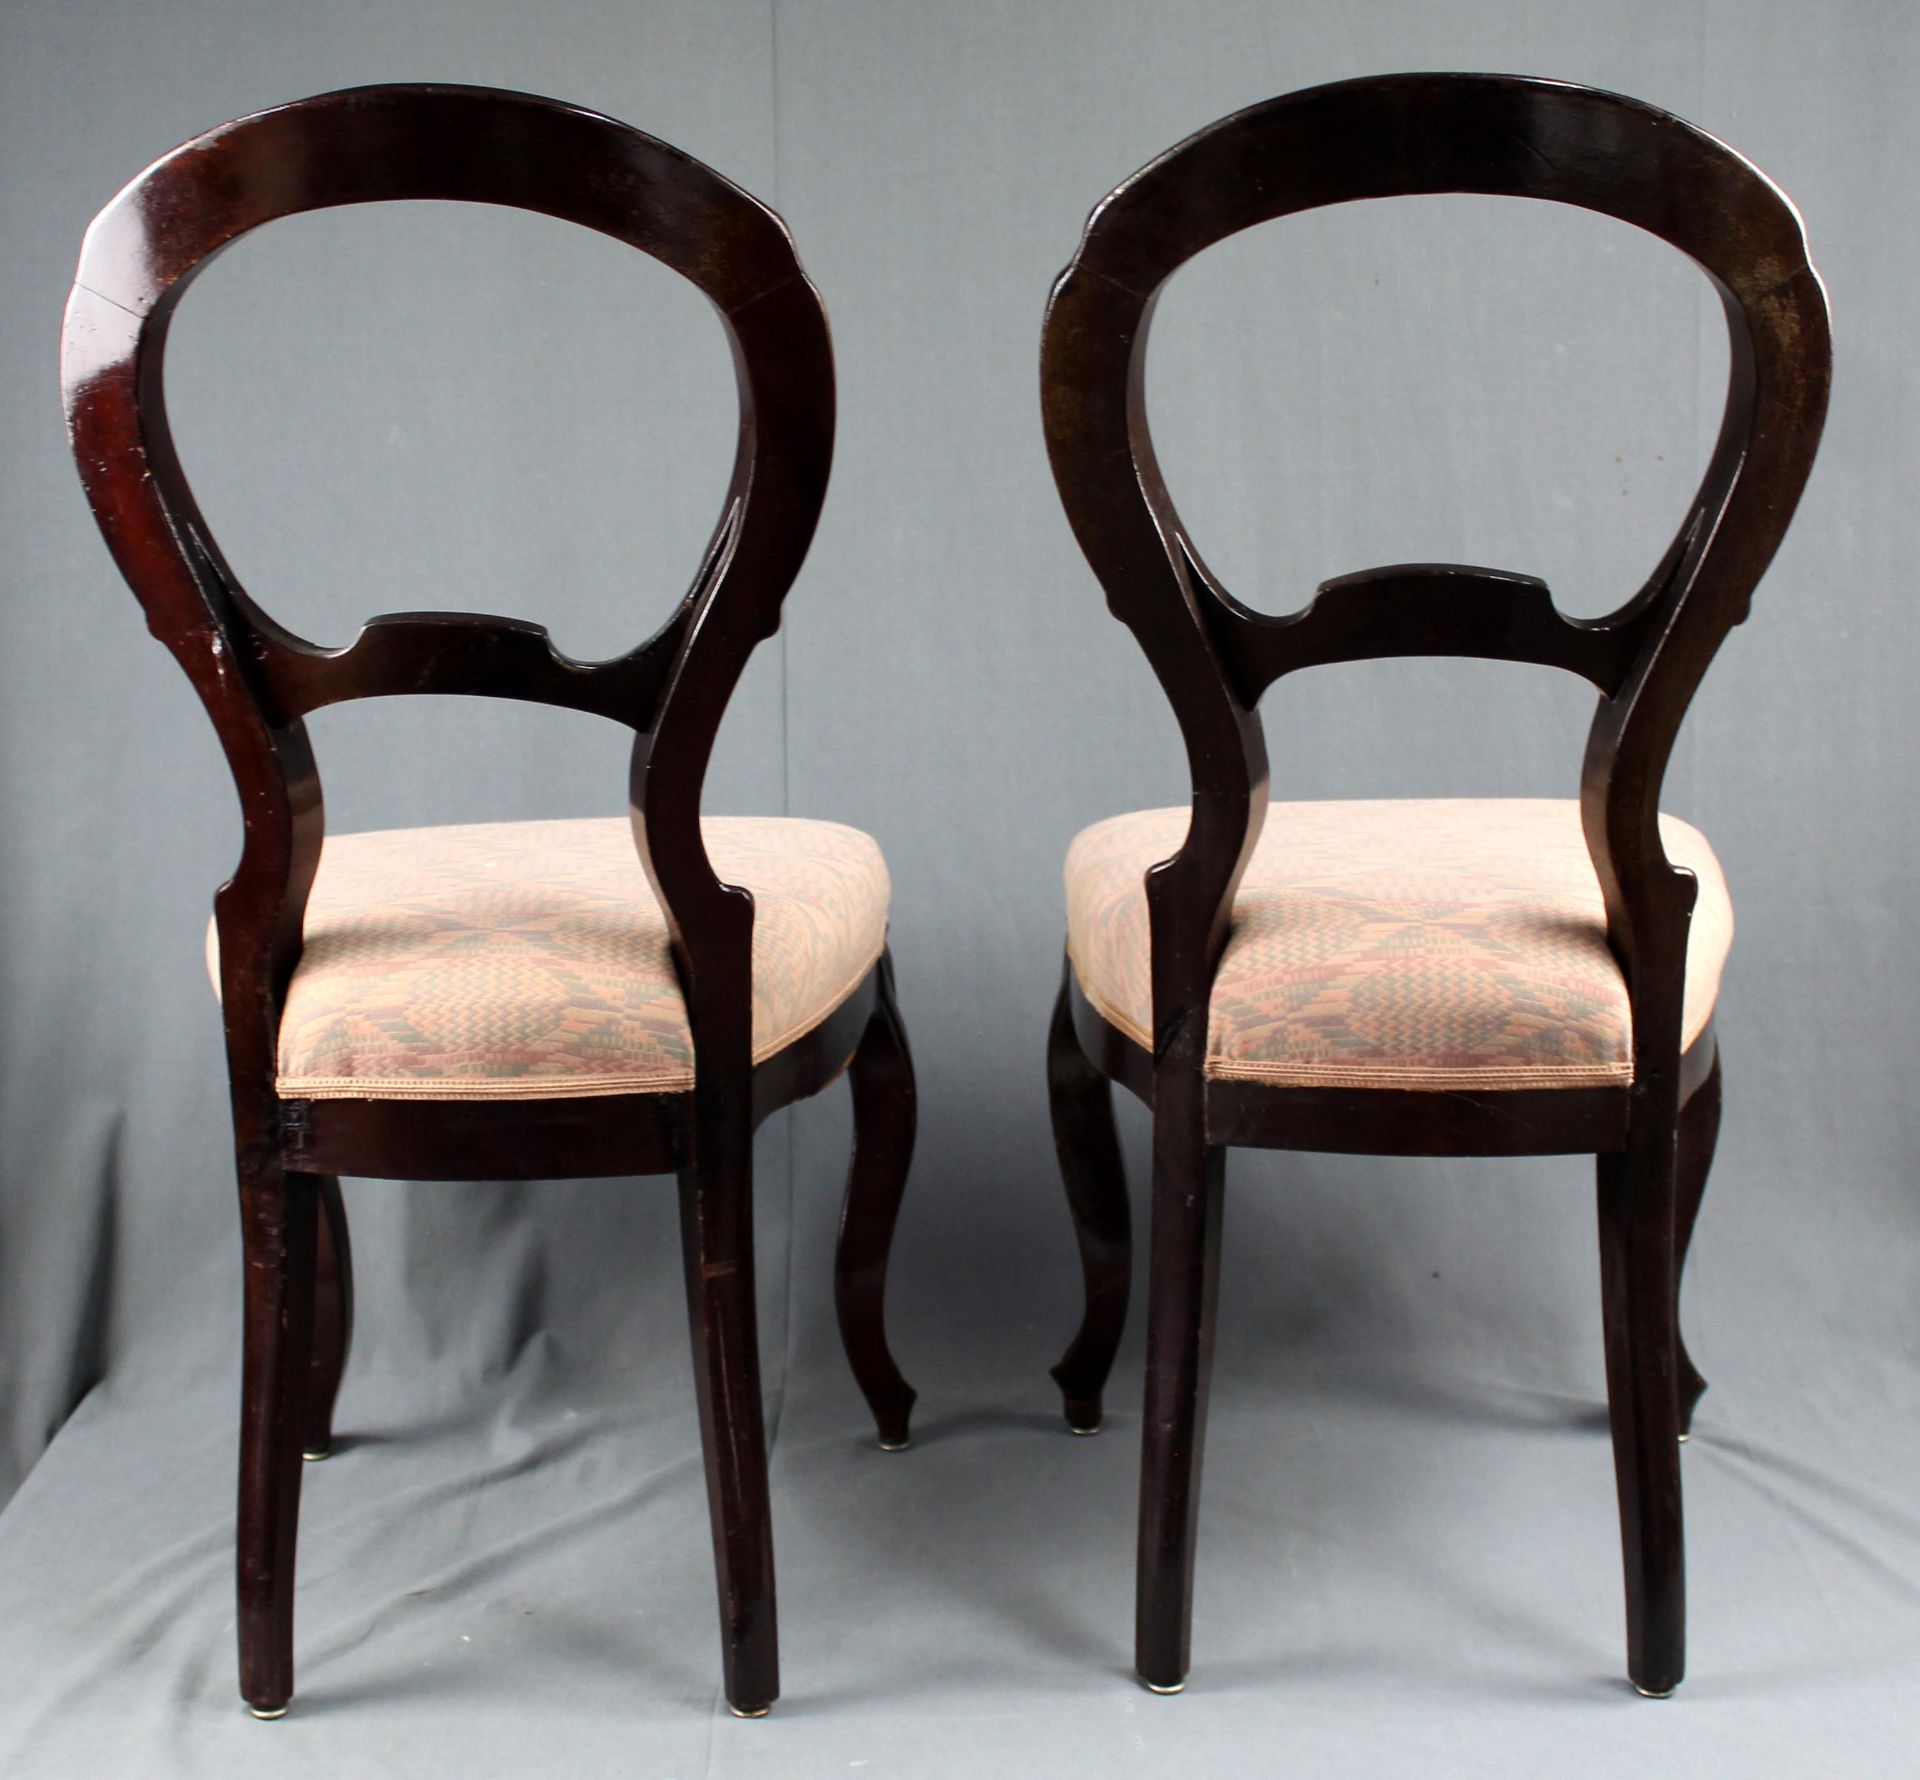 2 Stühle. Holz geschnitzt und ebonisiert. Wohl Periode Louis-Philippe I..92 cm x 46 cm x 59 cm. - Bild 10 aus 13